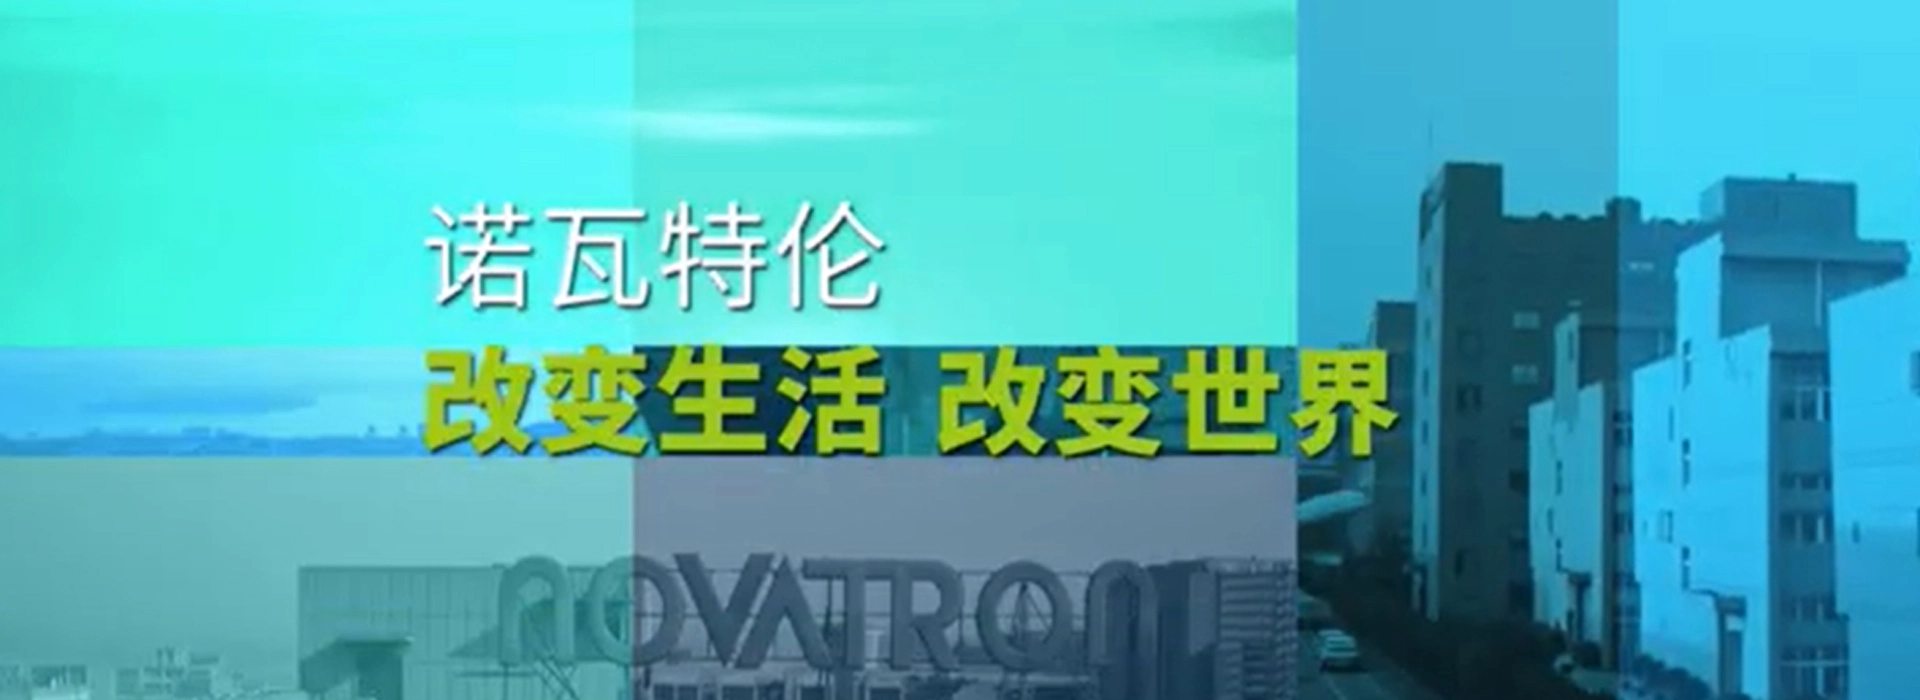 Novatron ملف الشركة الفيديو الصينية